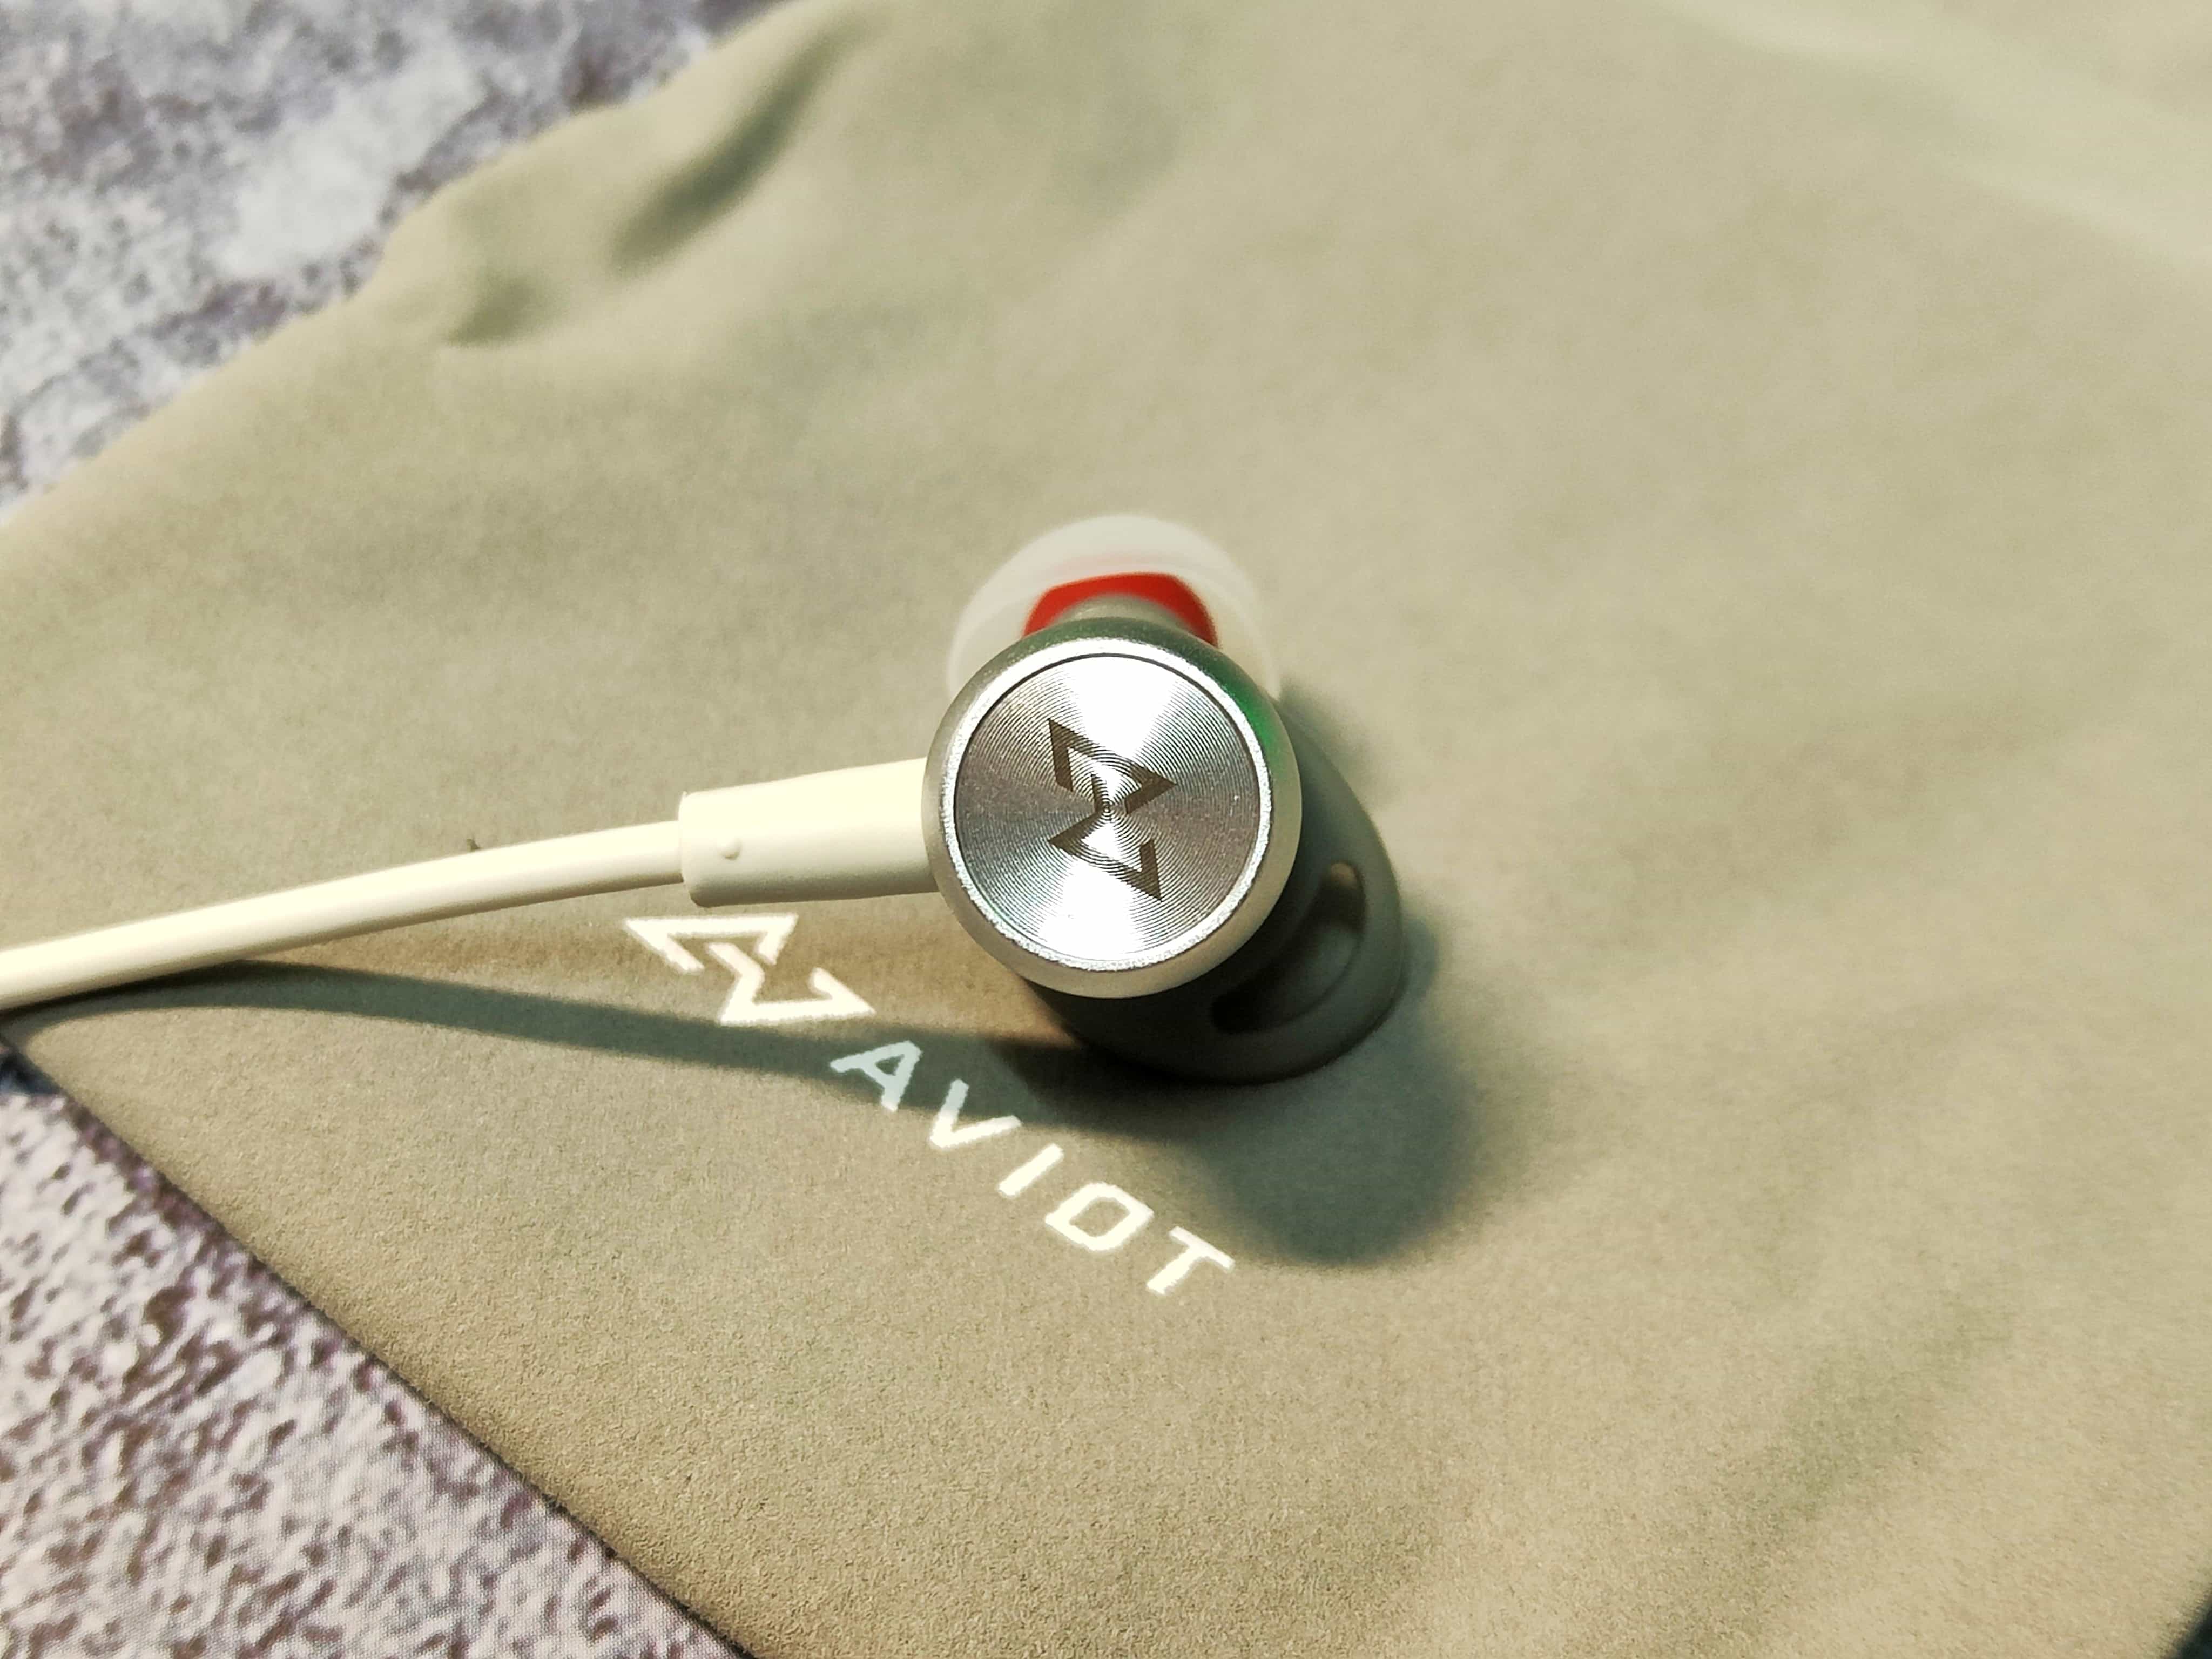 AVIOT WE-BD21d 無線藍牙耳機 – 長續航、高質感的運動藍牙耳機